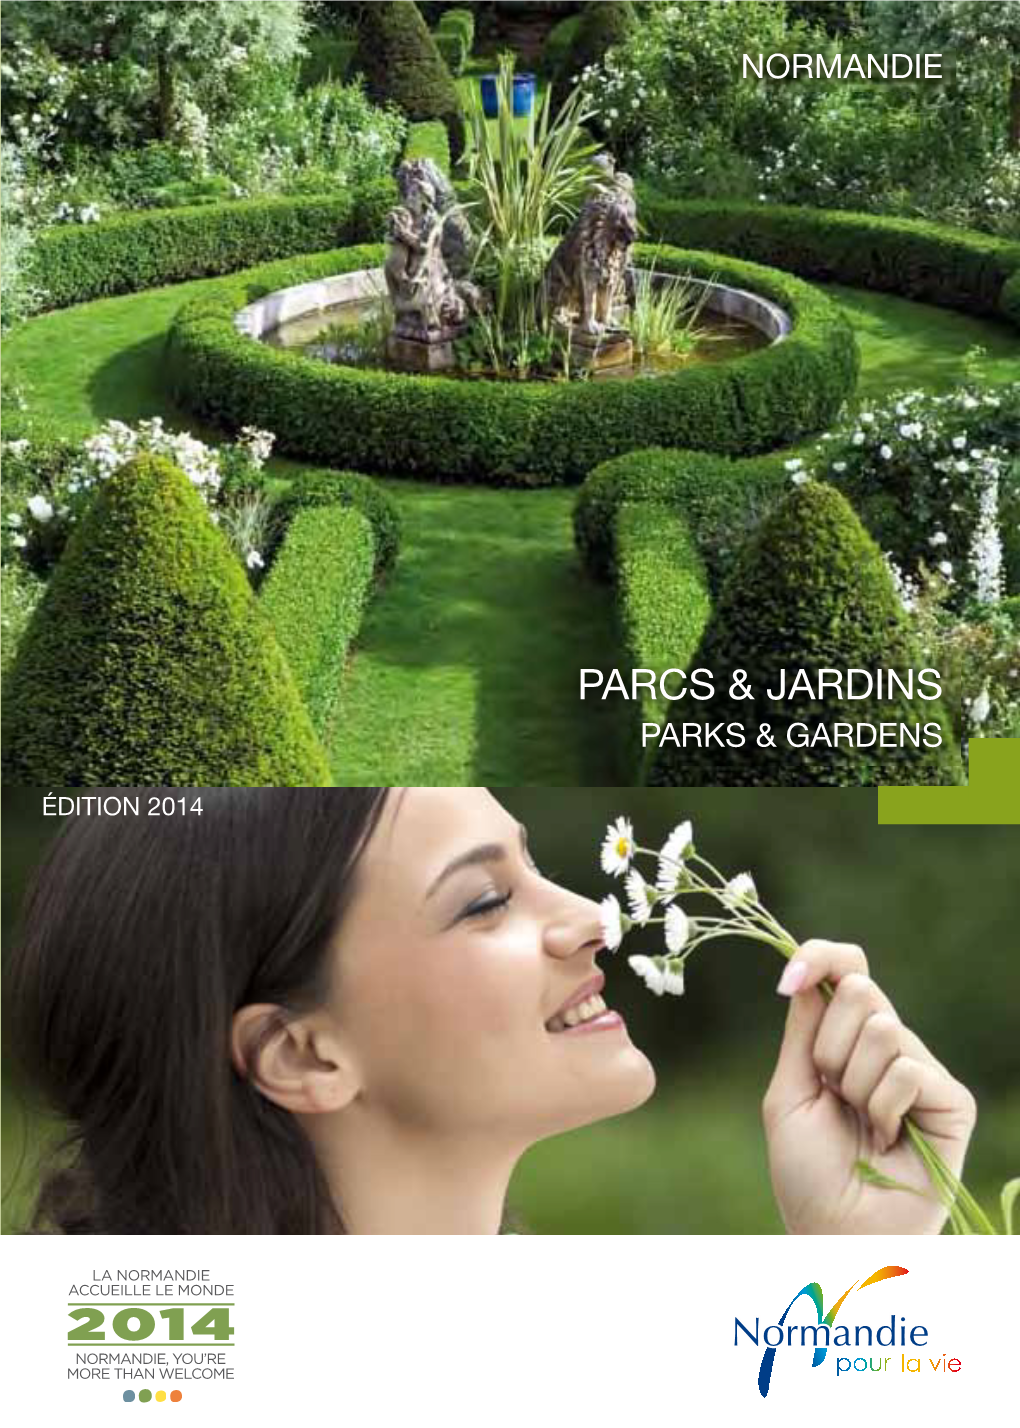 Parcs & Jardins